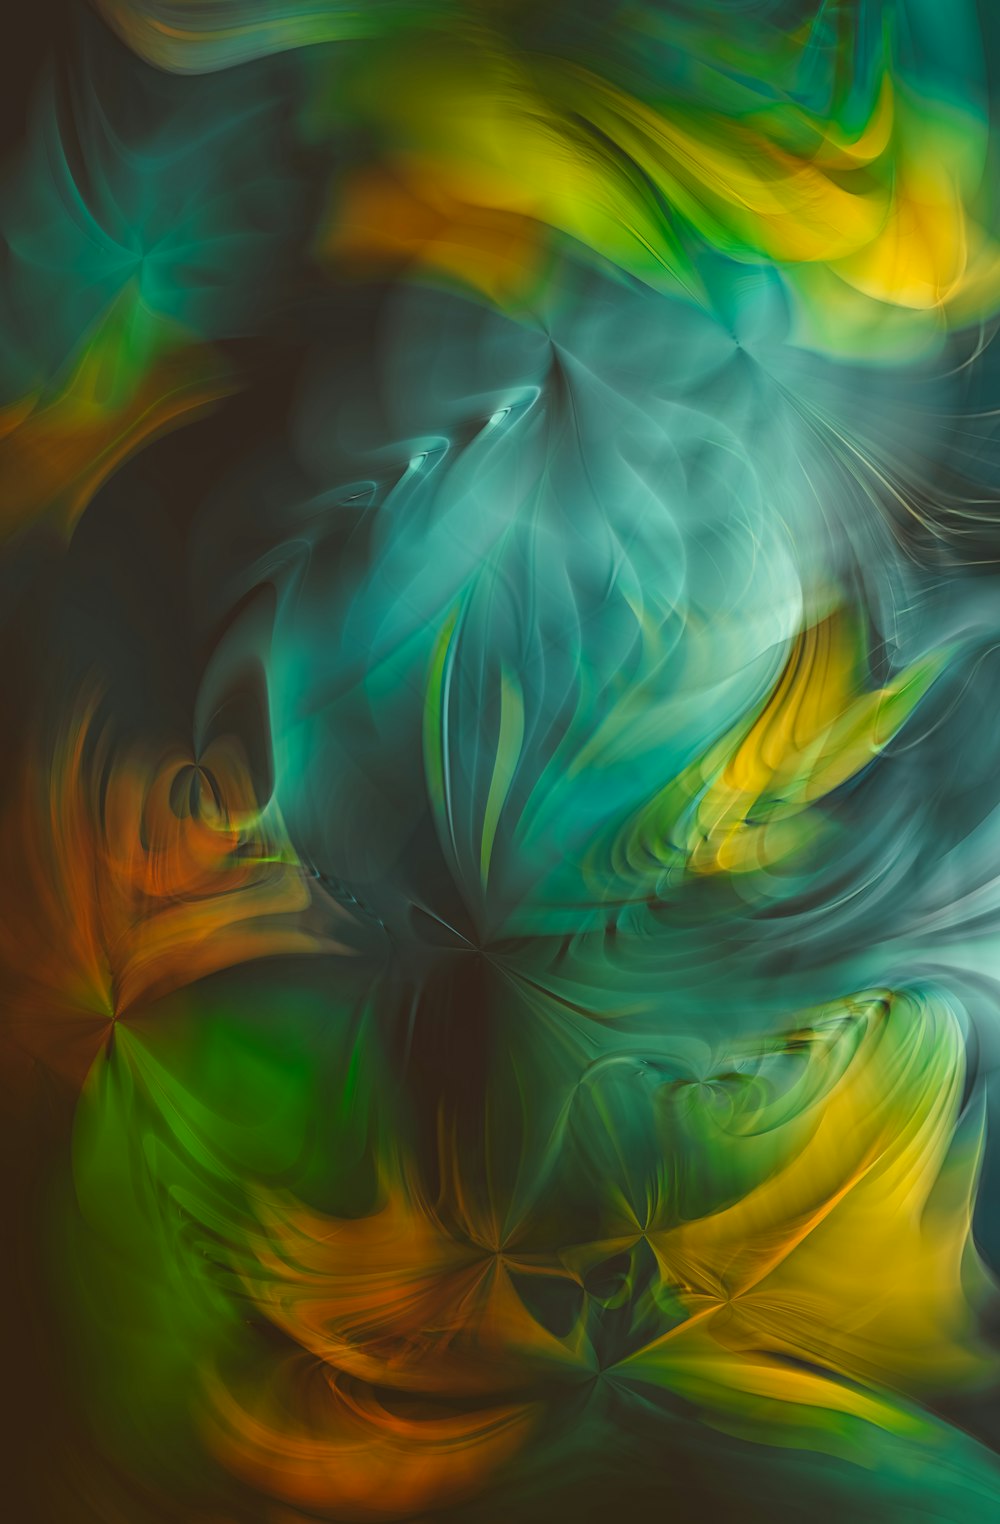 ein abstraktes Gemälde in grünen, gelben und orangefarbenen Farben